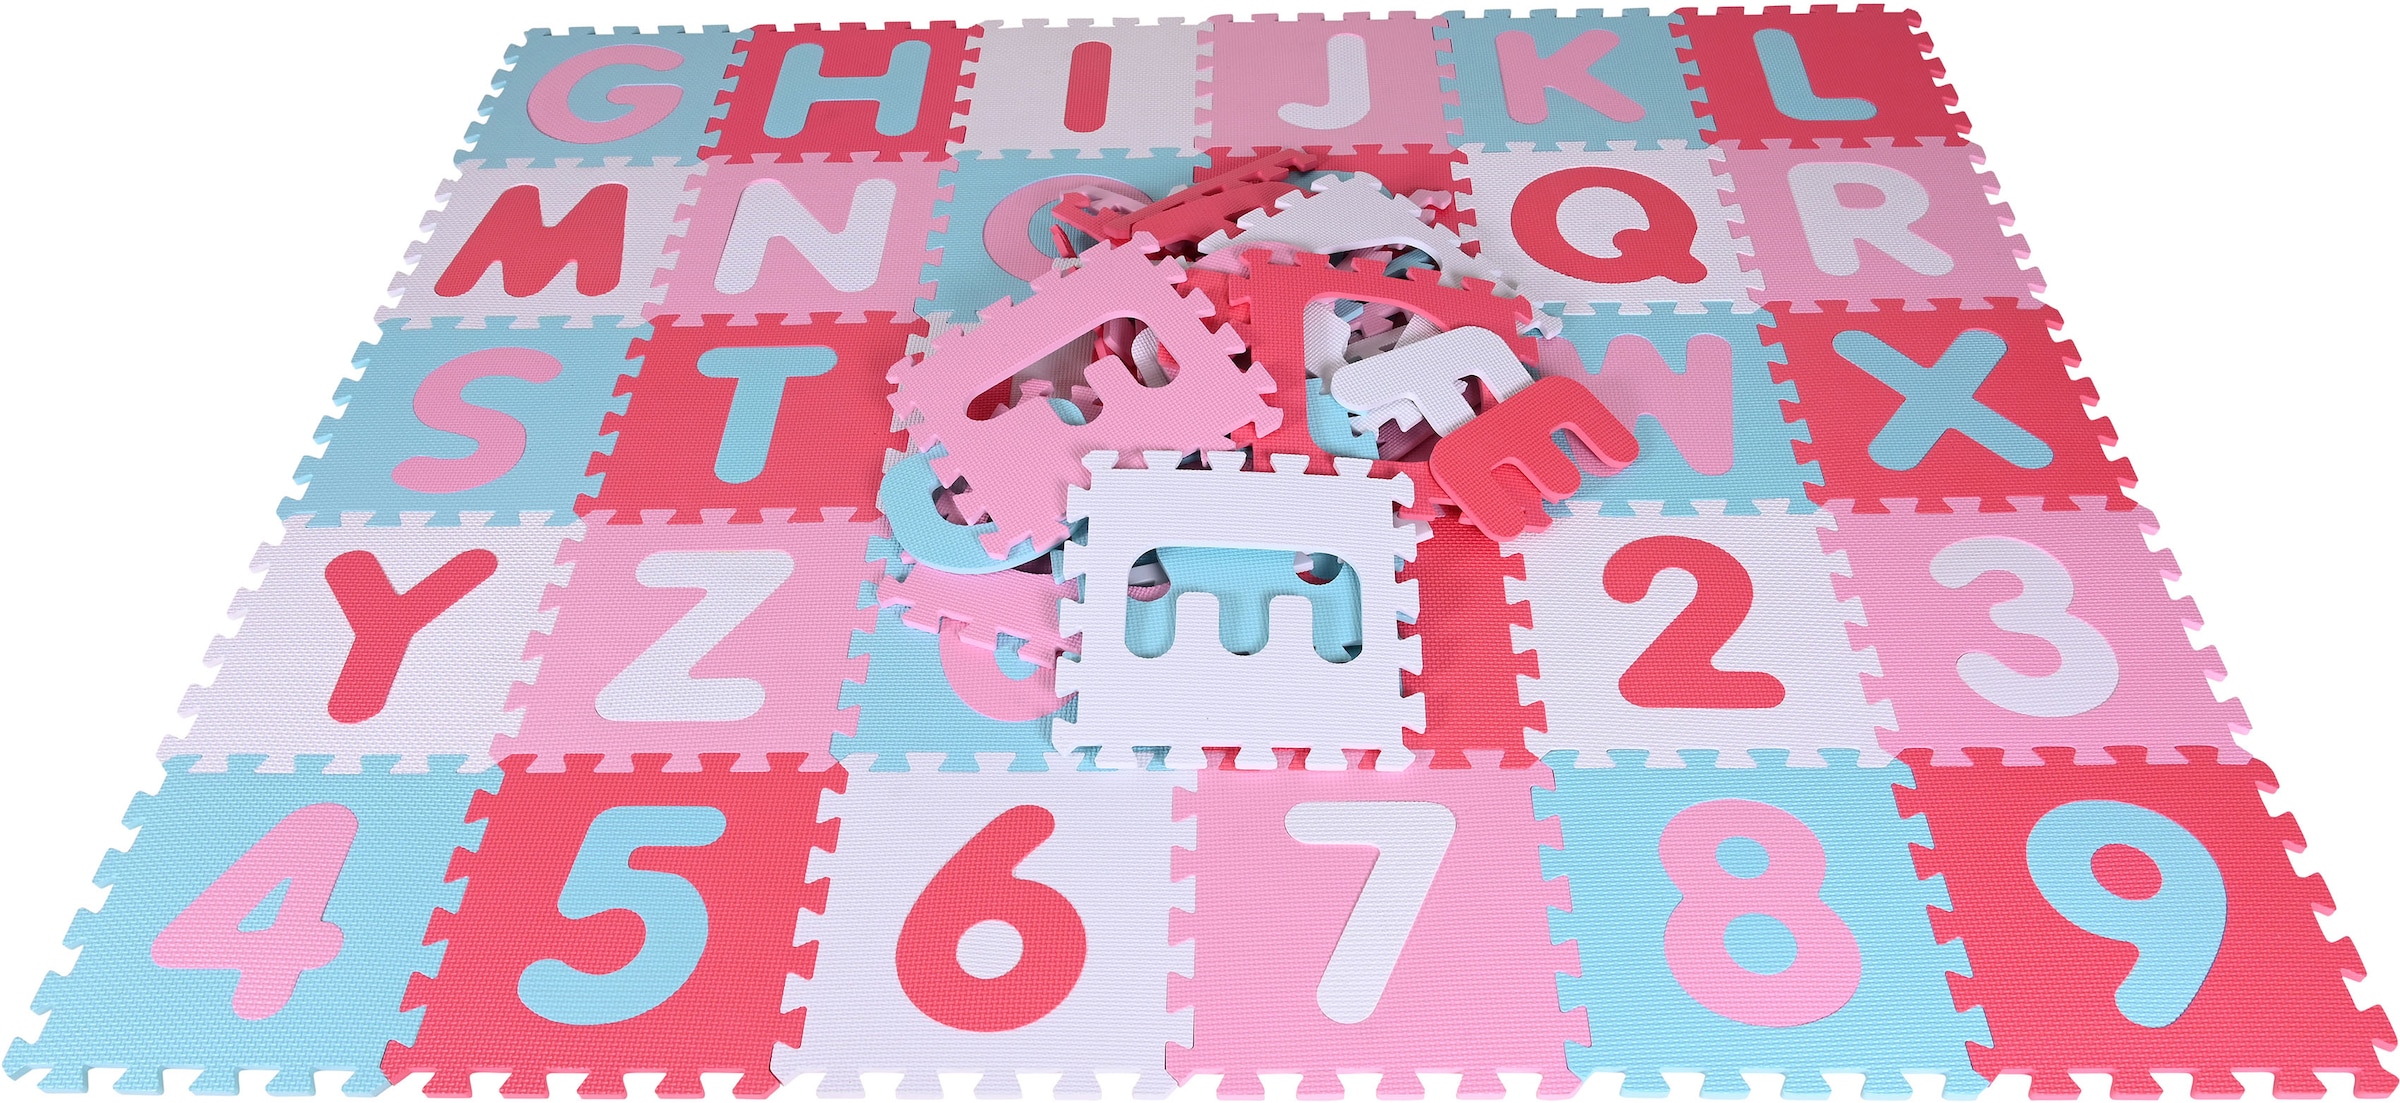 Knorrtoys® Puzzle »Alphabet + Zahlen, Pink-rosa«, Puzzlematte, Bodenpuzzle